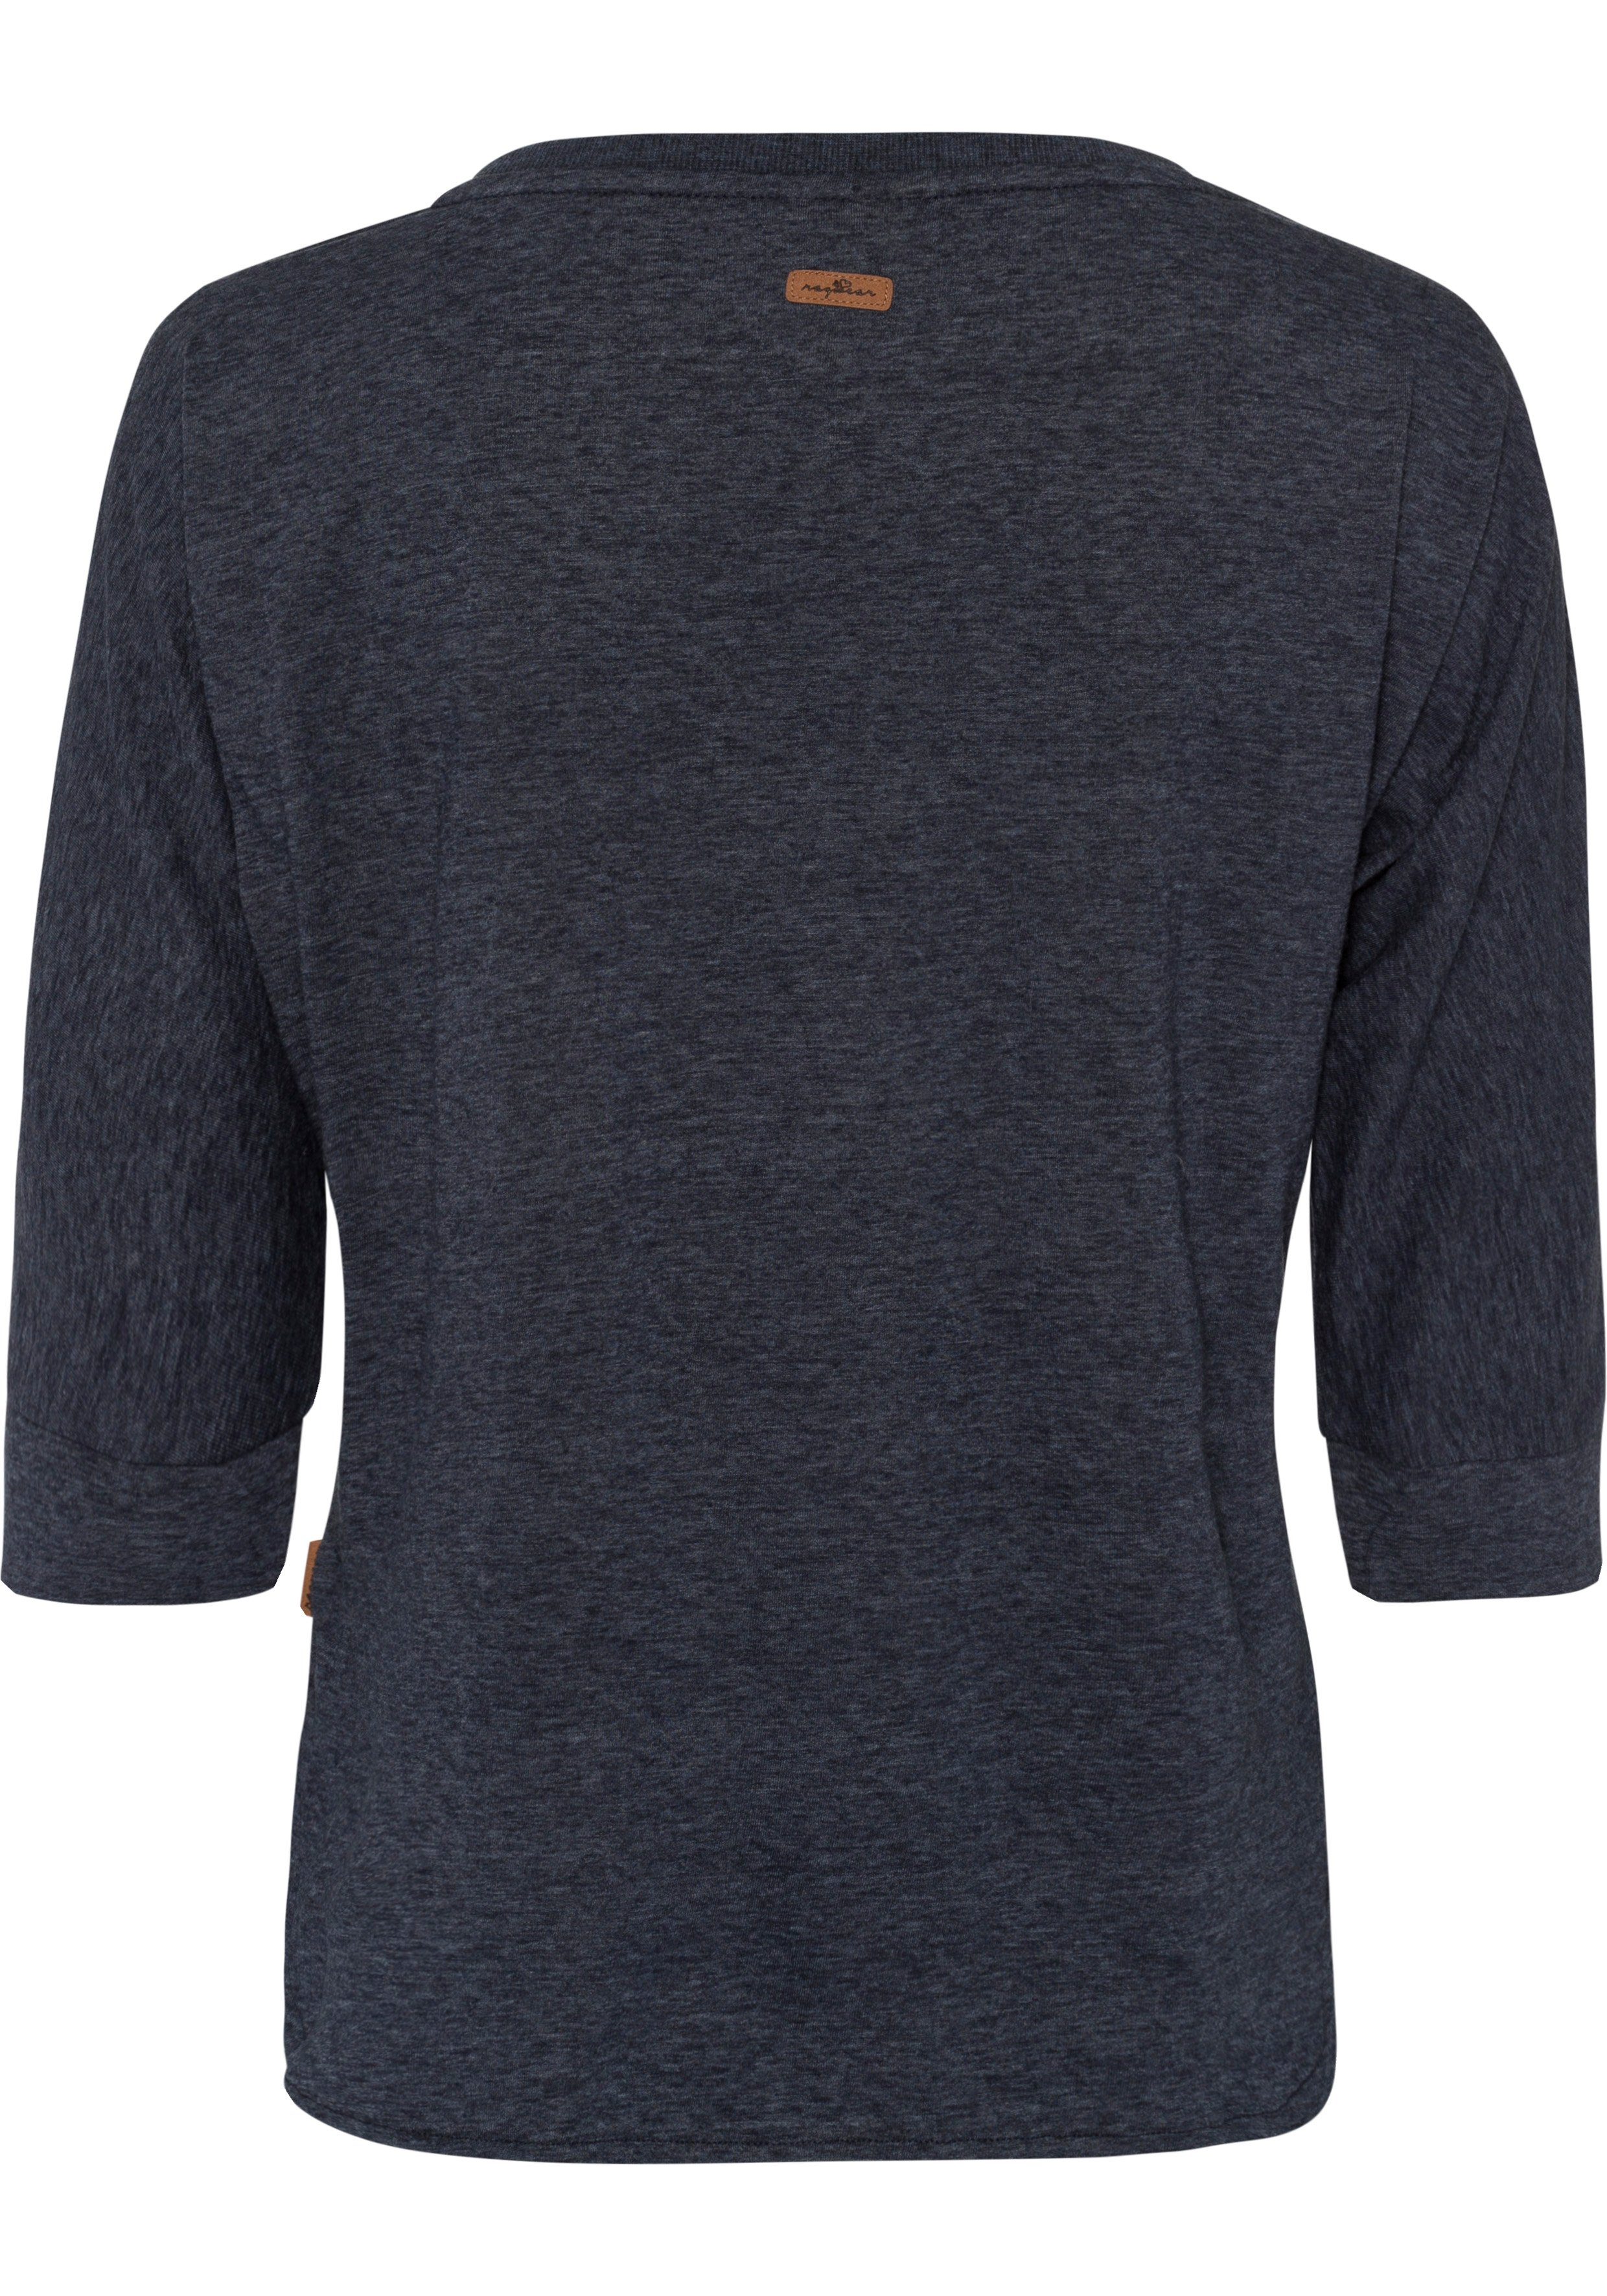 Ragwear Herz-Design SHIMONA natürlicher navy im in Holzoptik T-Shirt Zierknopfbesatz mit